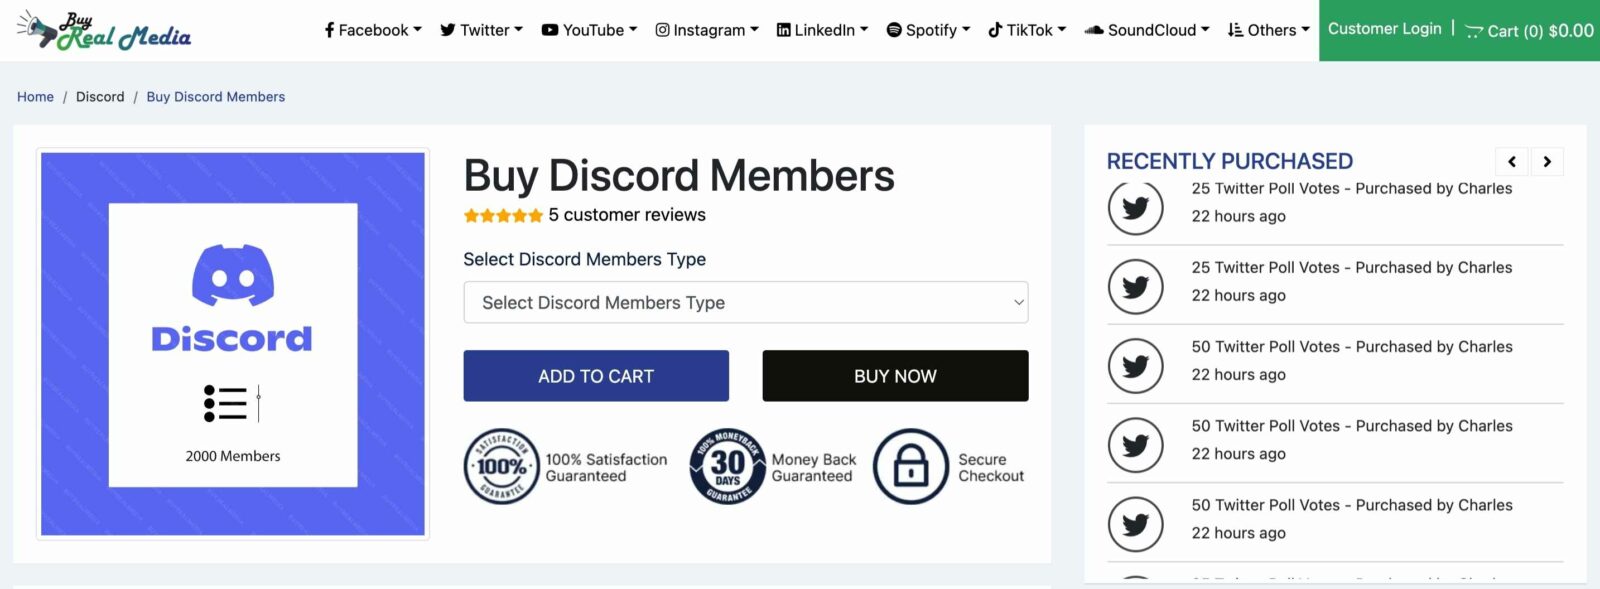 buyrealmedia buy discord members